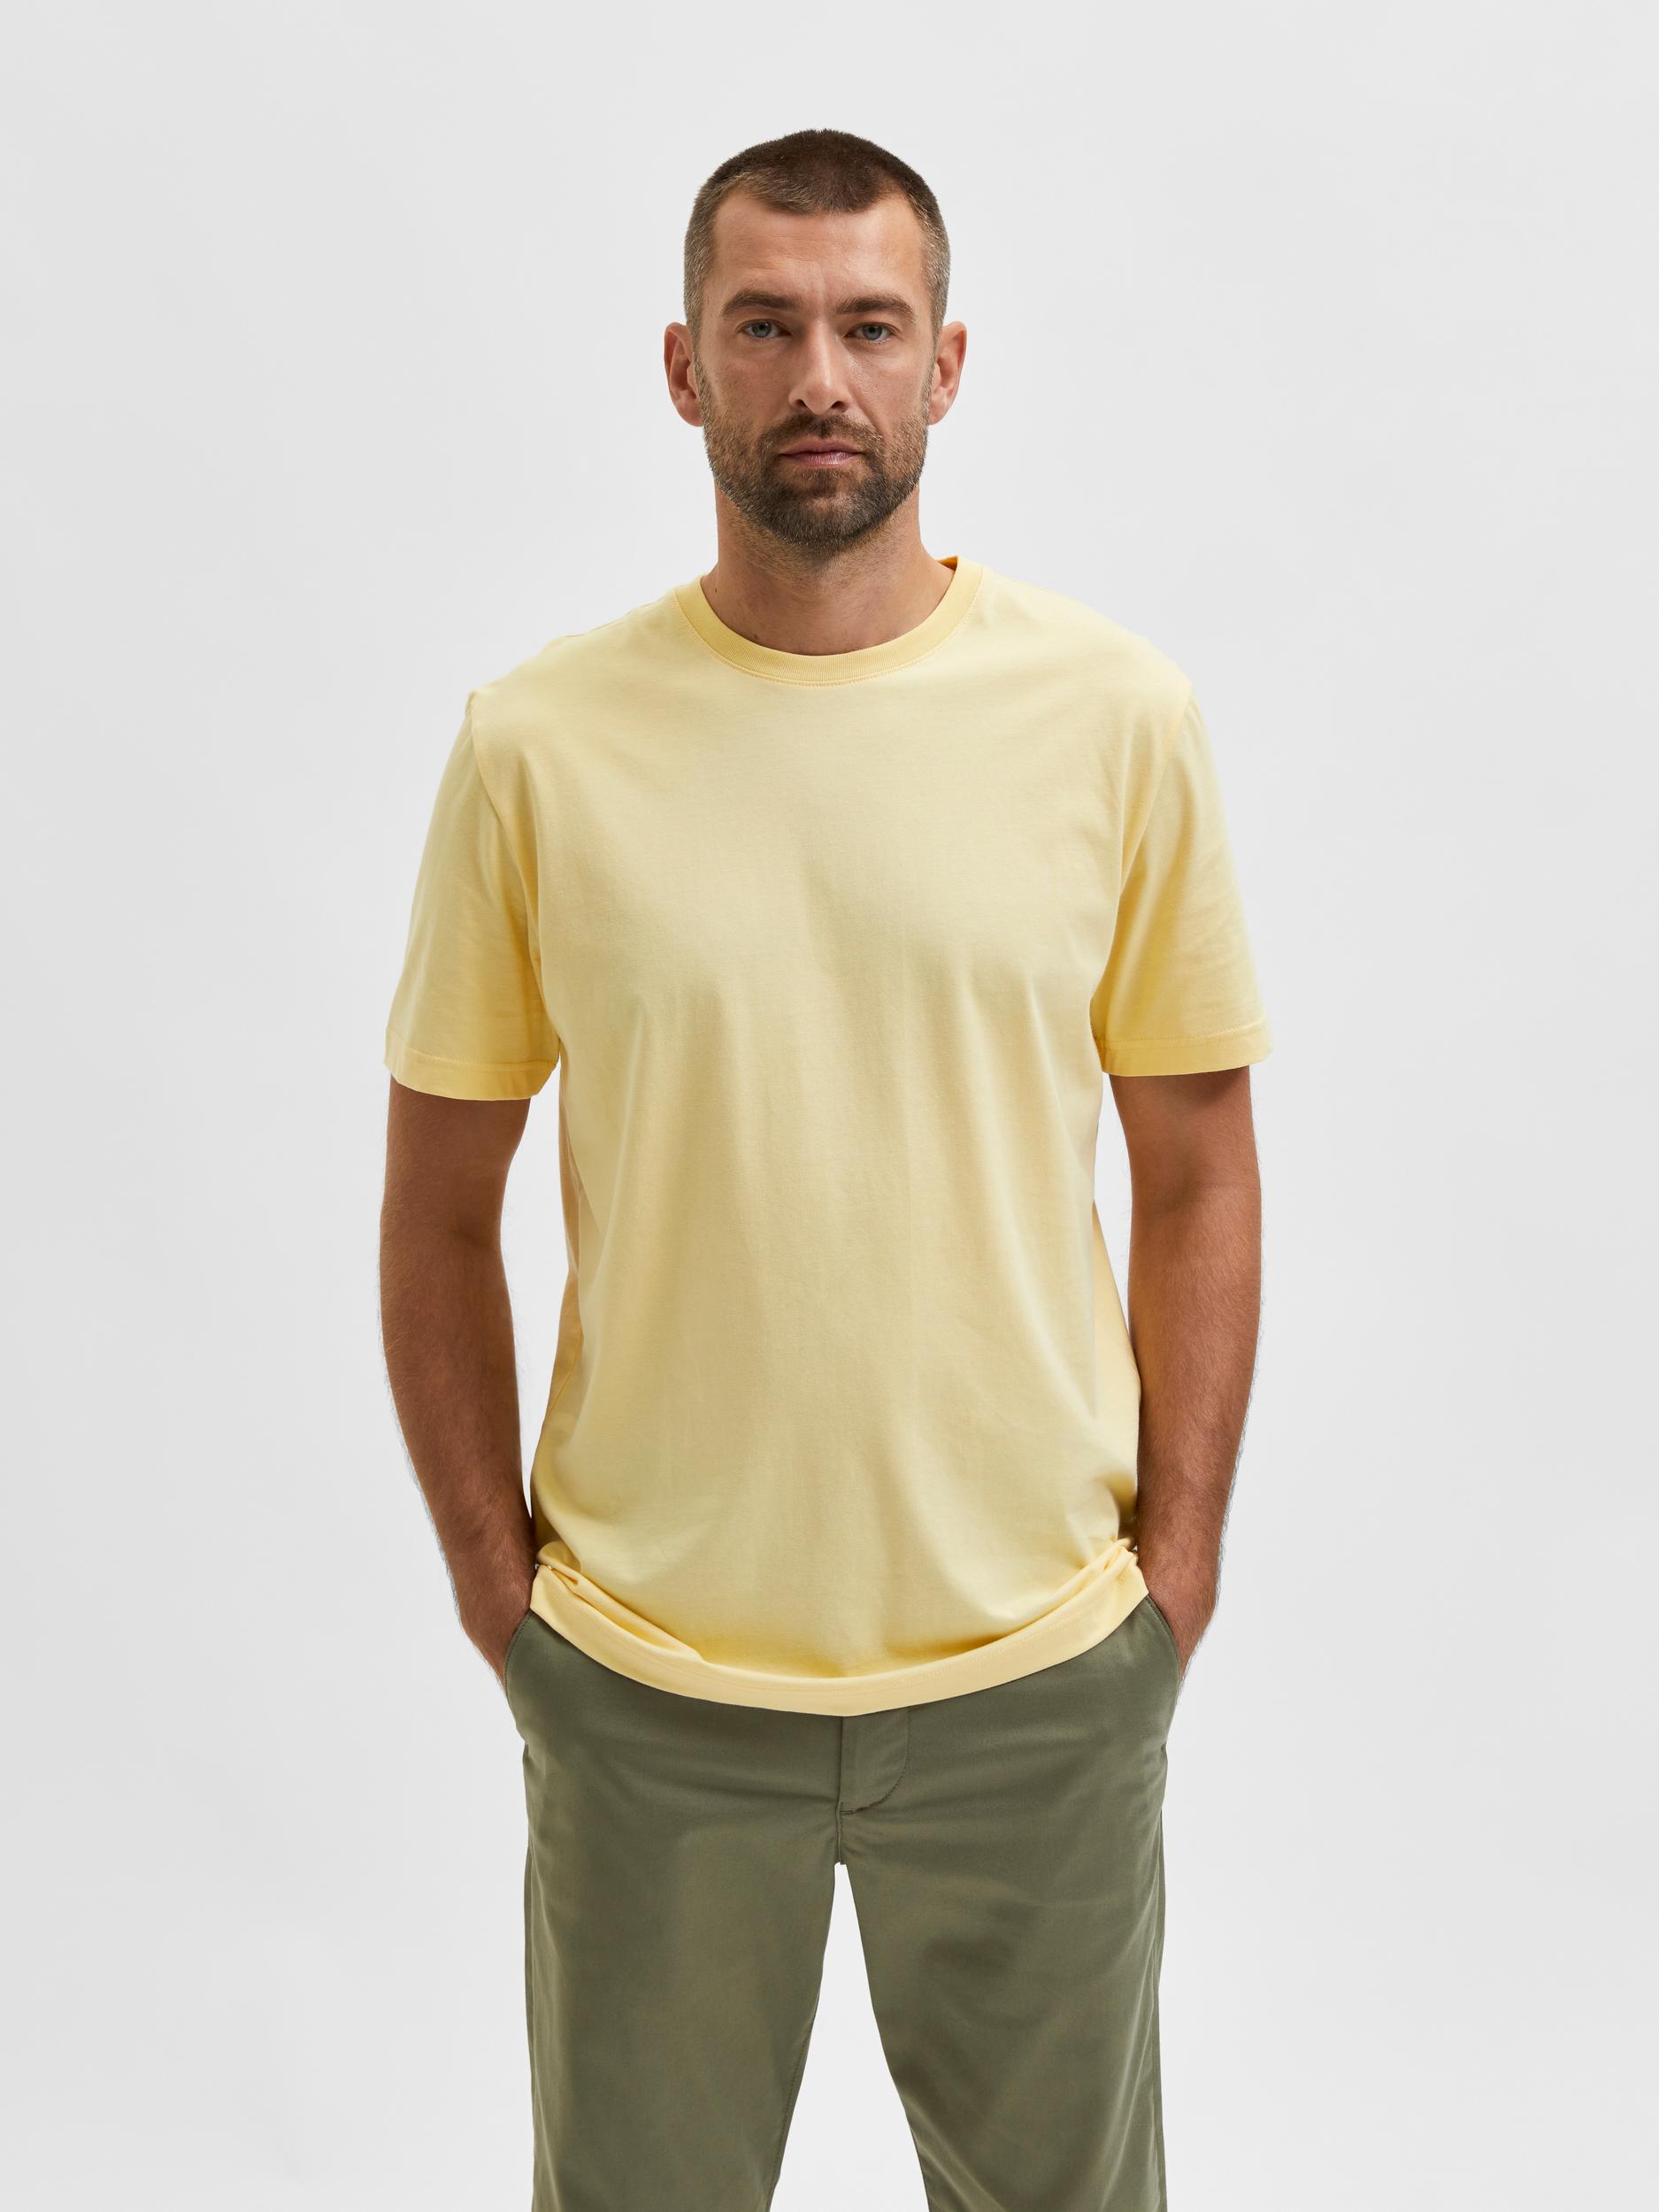  Norman T-shirt, Sunlight, XXL